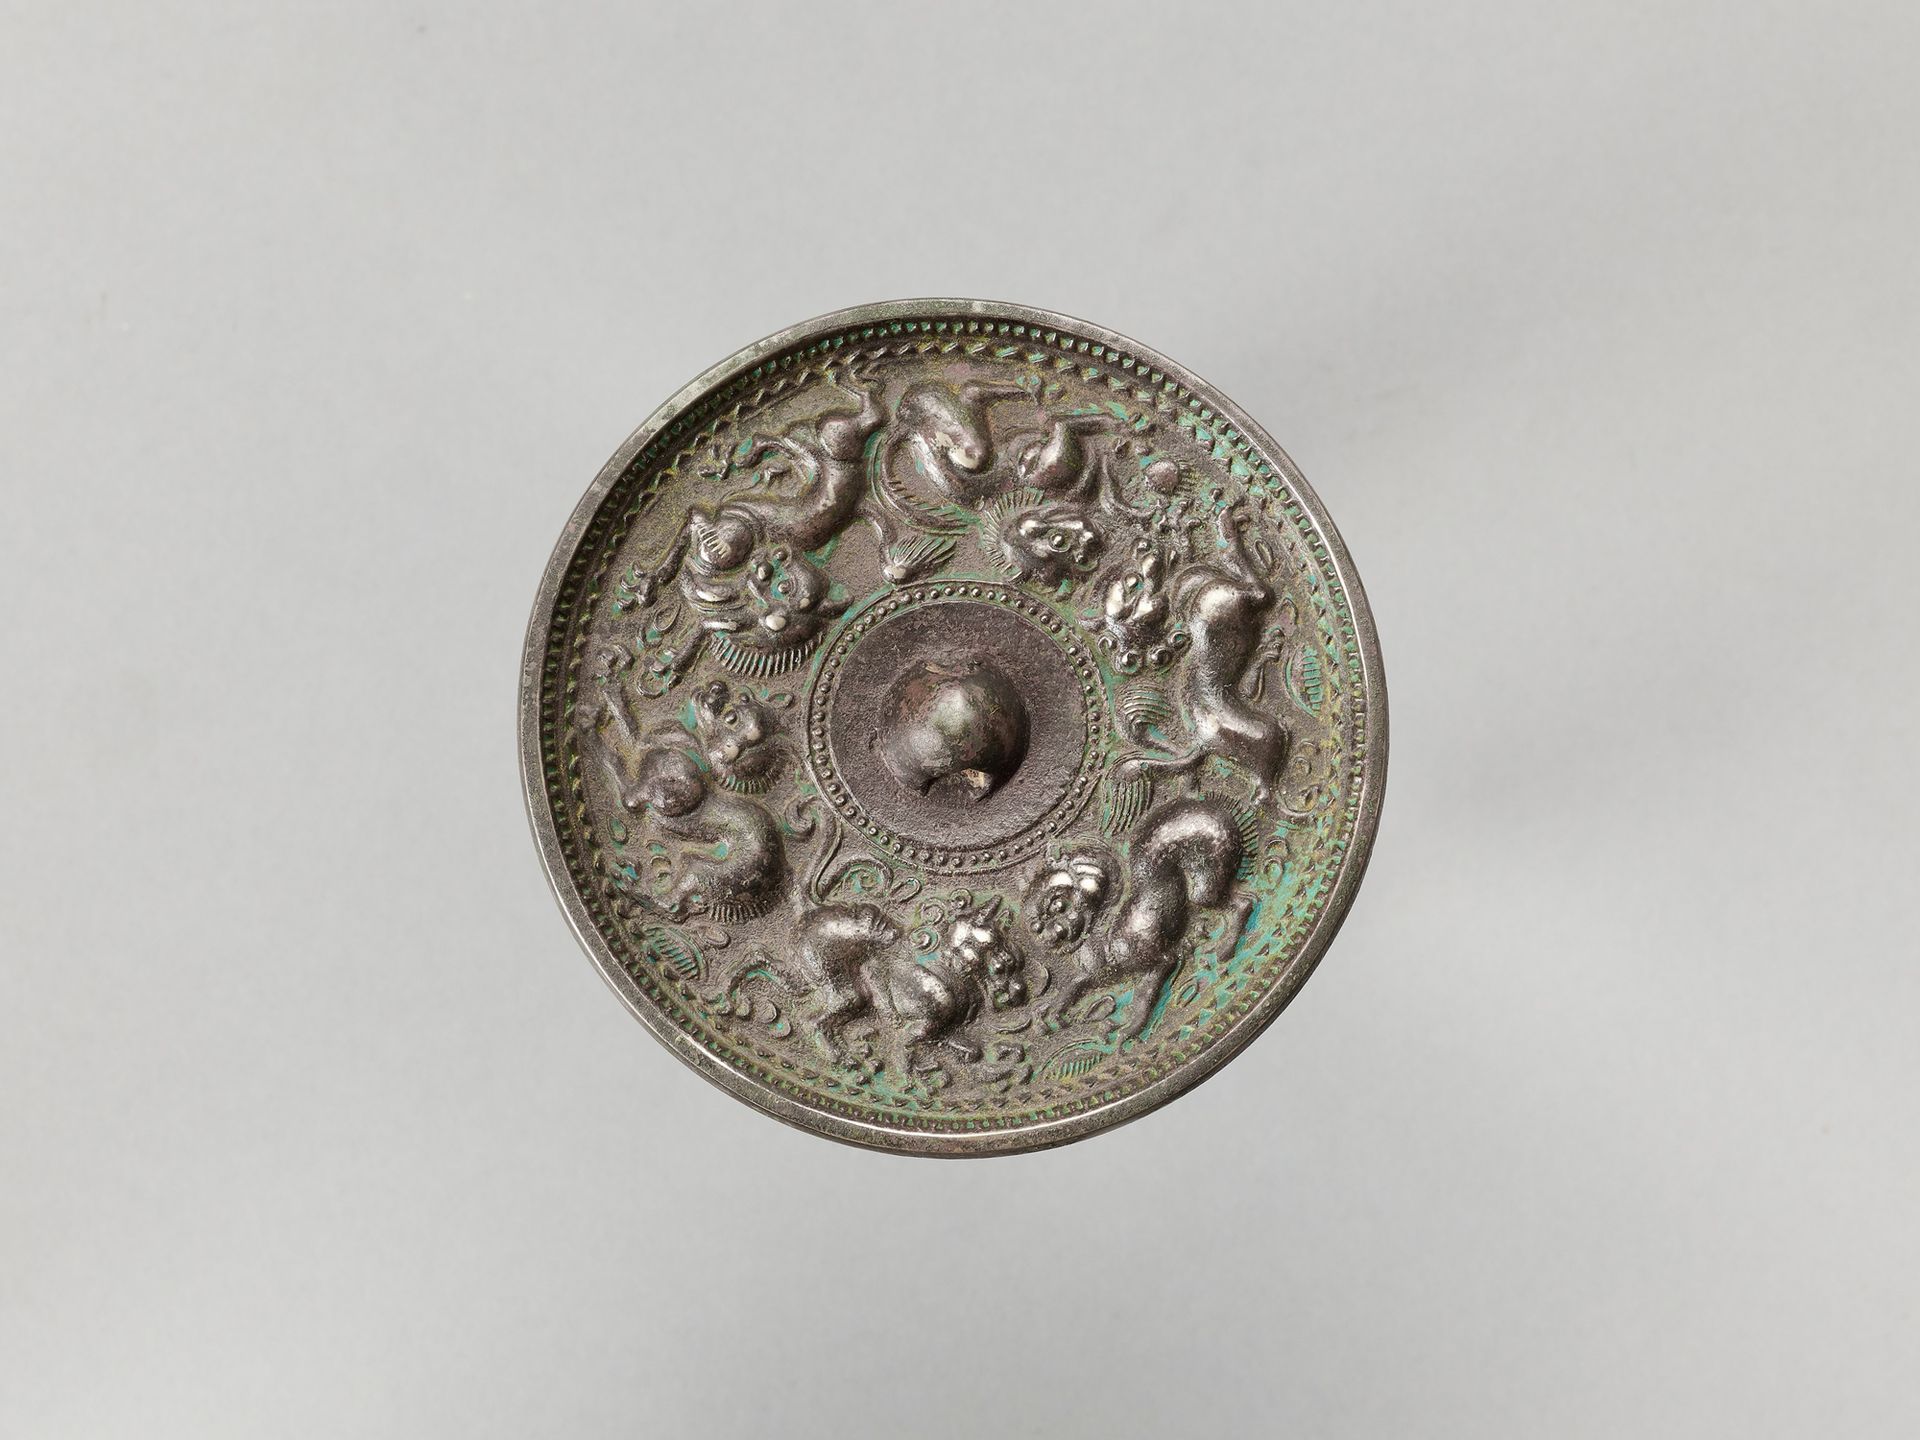 A CIRCULAR BRONZE MIRROR WITH ANIMALS 圆环形铜镜与动物
中国，晚清时期。

狀況良好，有侵蝕的痕跡，有銅紅、銅綠的地方。状&hellip;